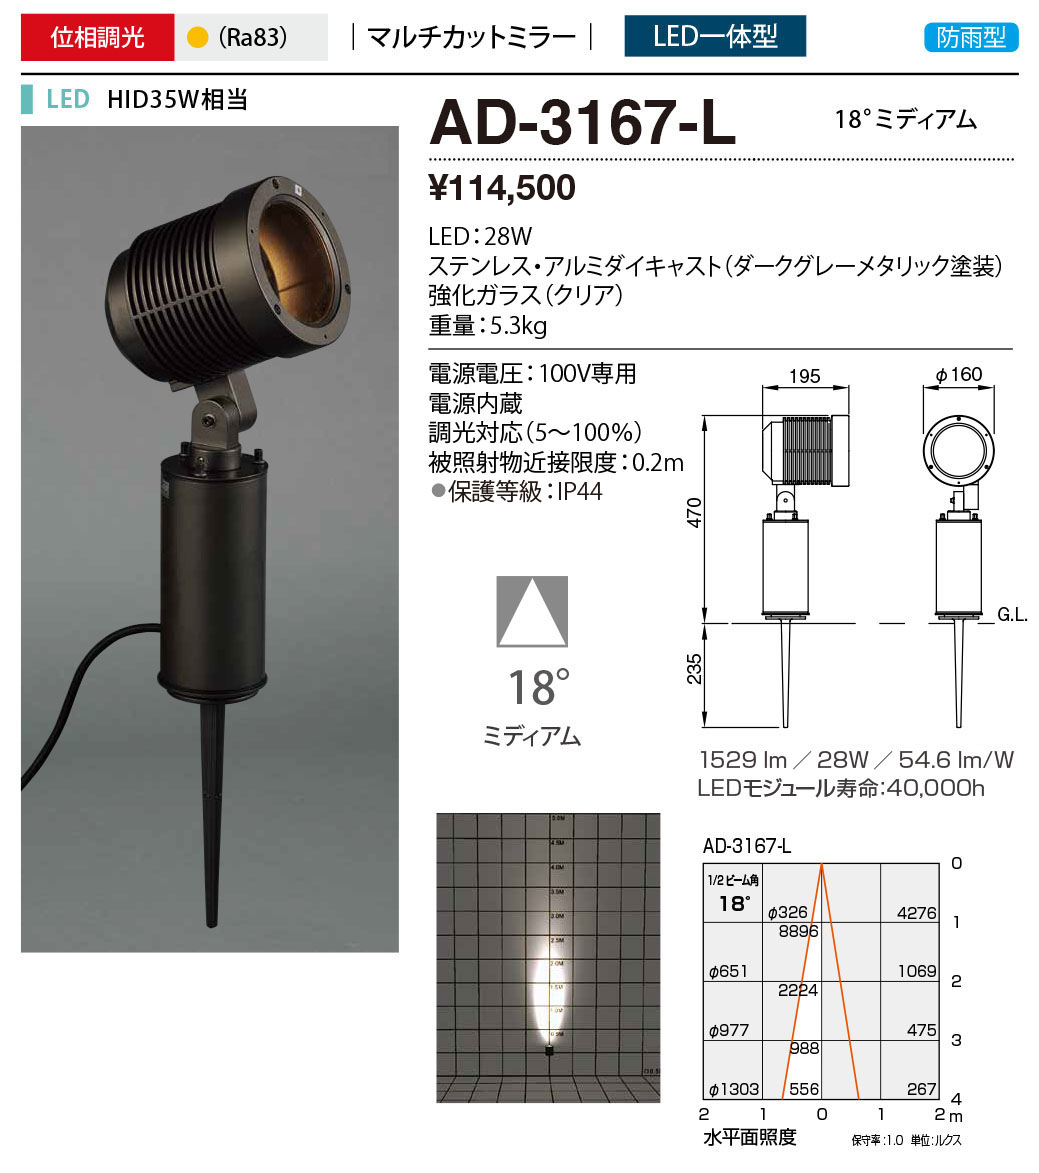 AD-3167-L エクステリア LED一体型 屋外投光器 ユニコーンスポットEX HID35W相当 マルチカットミラー 防雨型 位相調光 電球色  18°ミディアム 山田照明 屋外照明